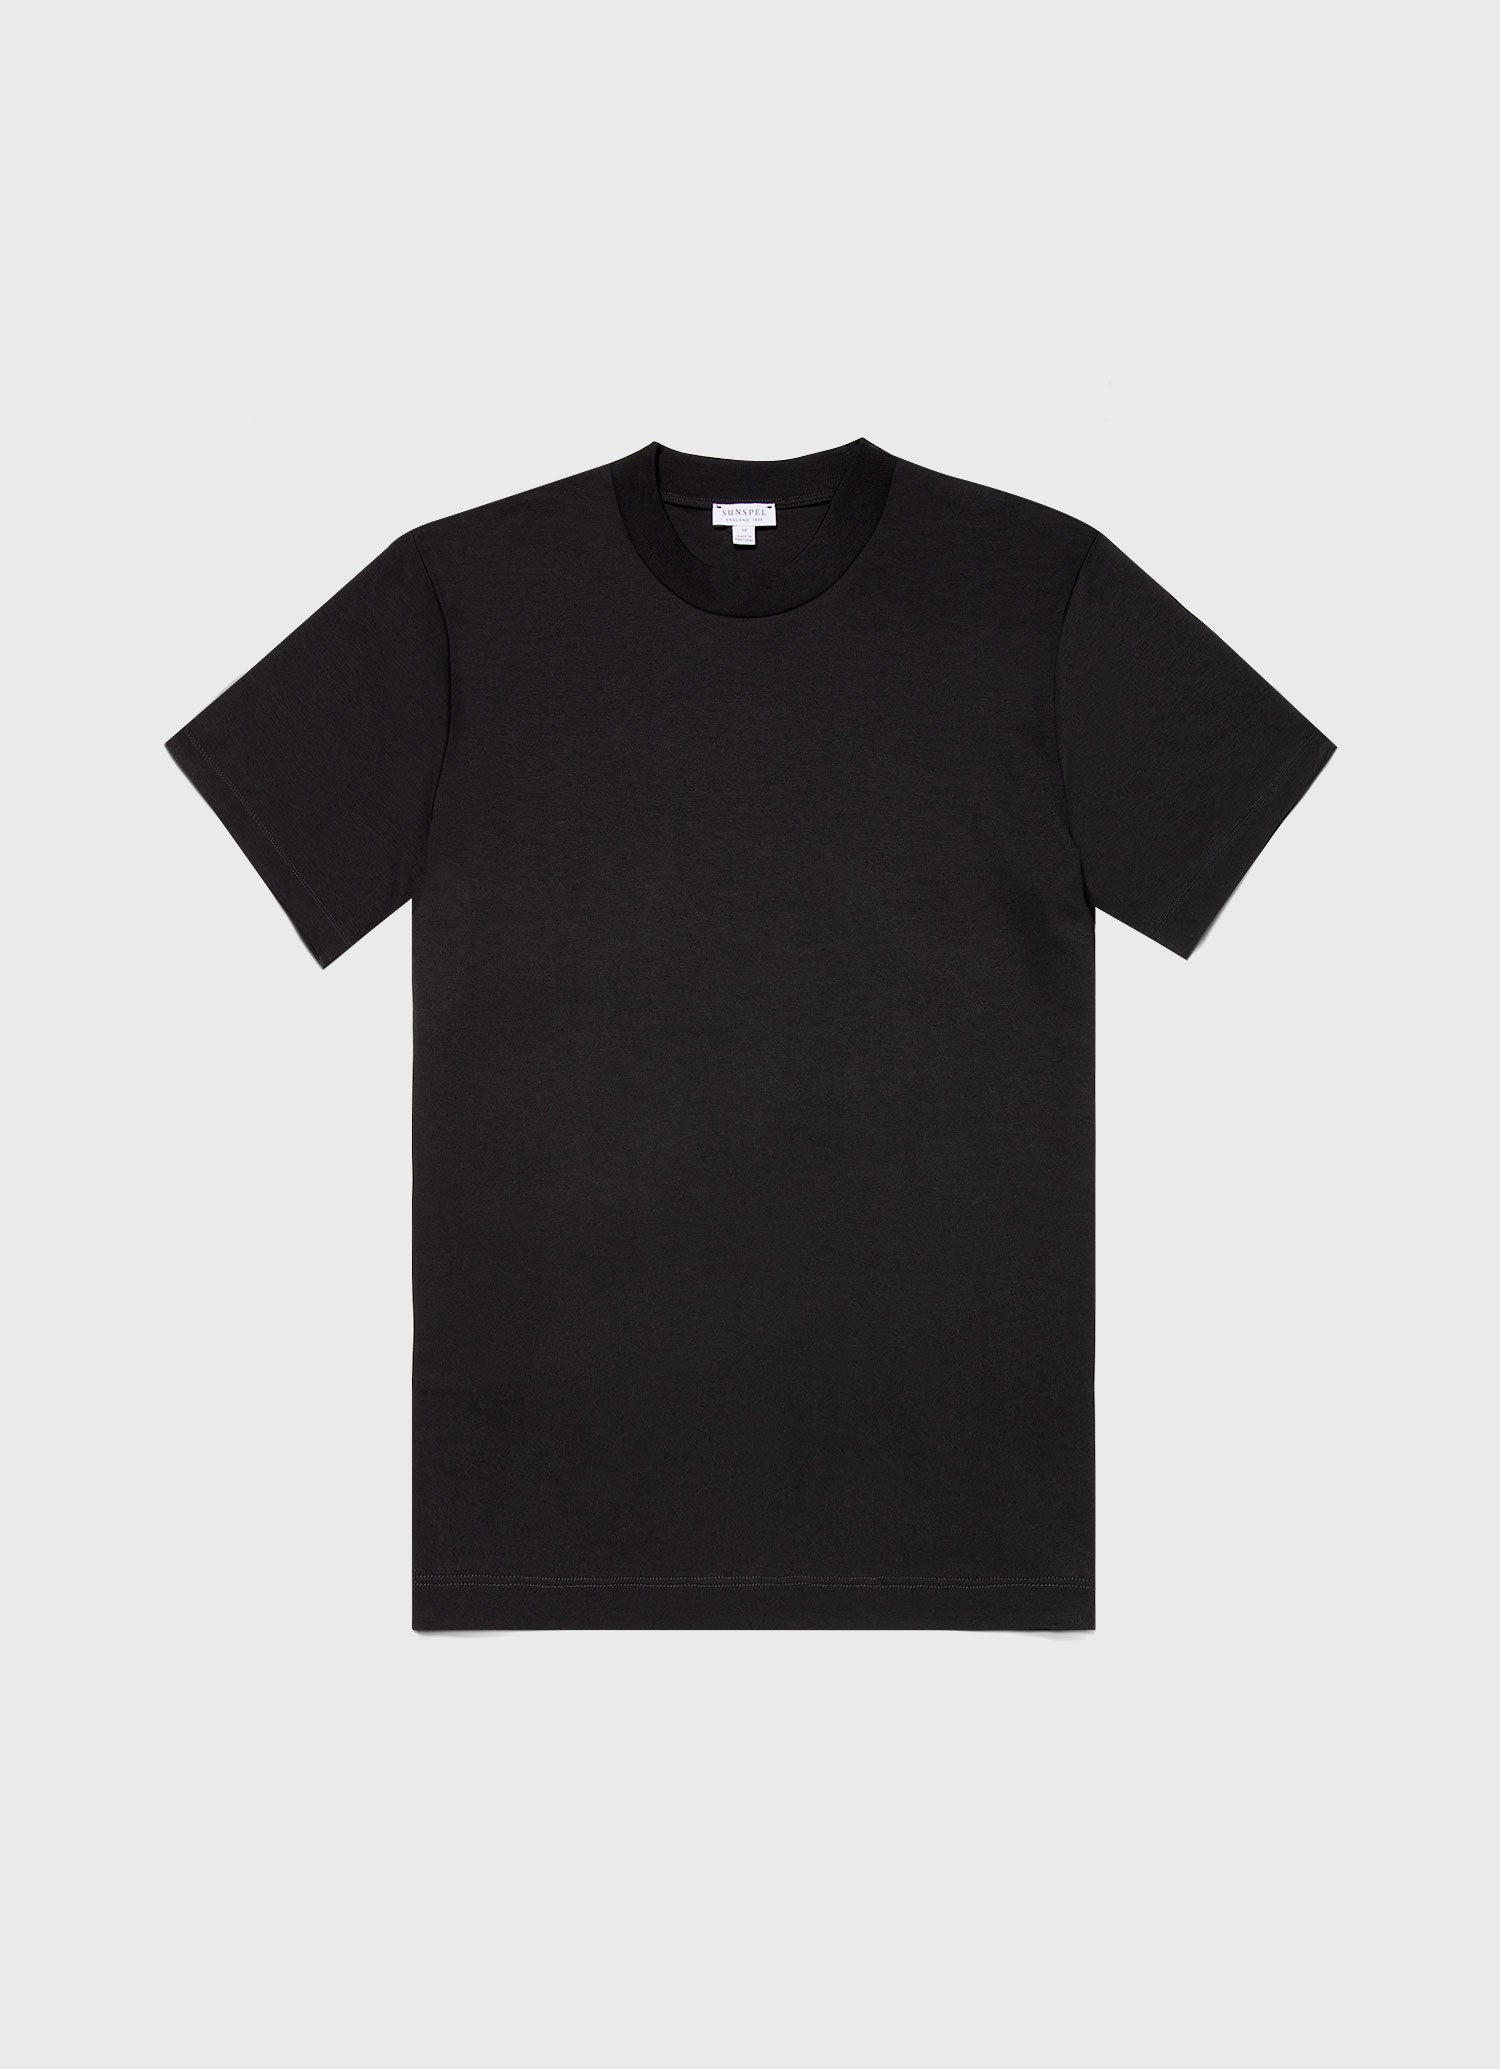 The Sunspel T-shirt | Sunspel